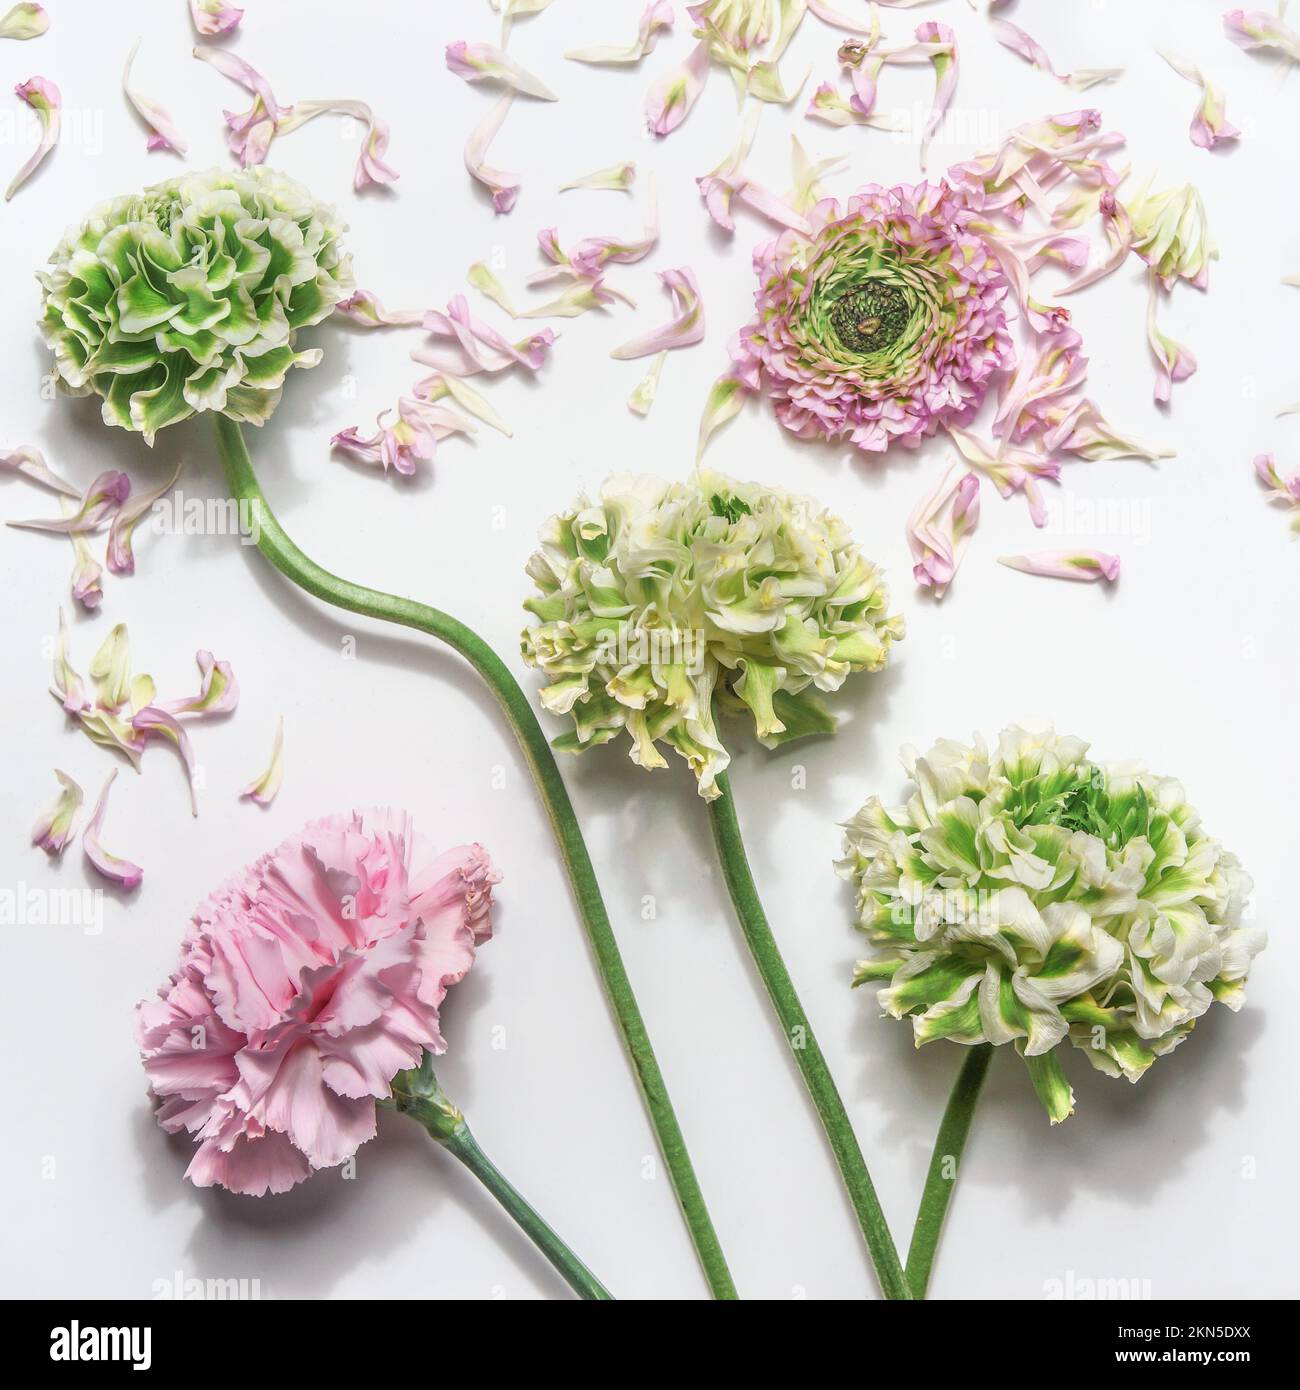 Blumenhintergrund mit hübschen grünen und pinkfarbenen Blumen und Blütenblättern, Draufsicht Stockfoto